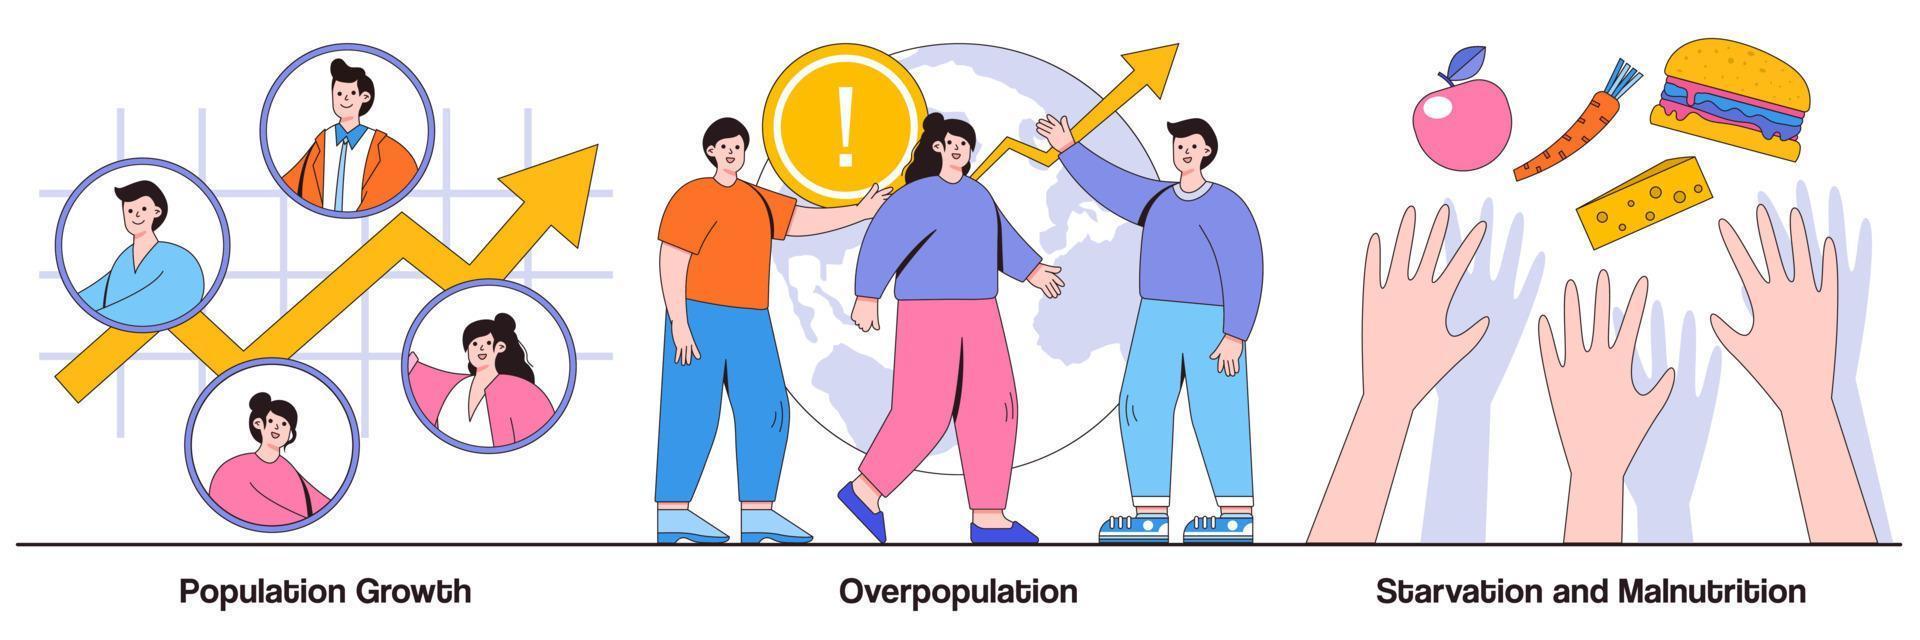 paquete ilustrado de crecimiento demográfico, superpoblación, inanición y desnutrición vector